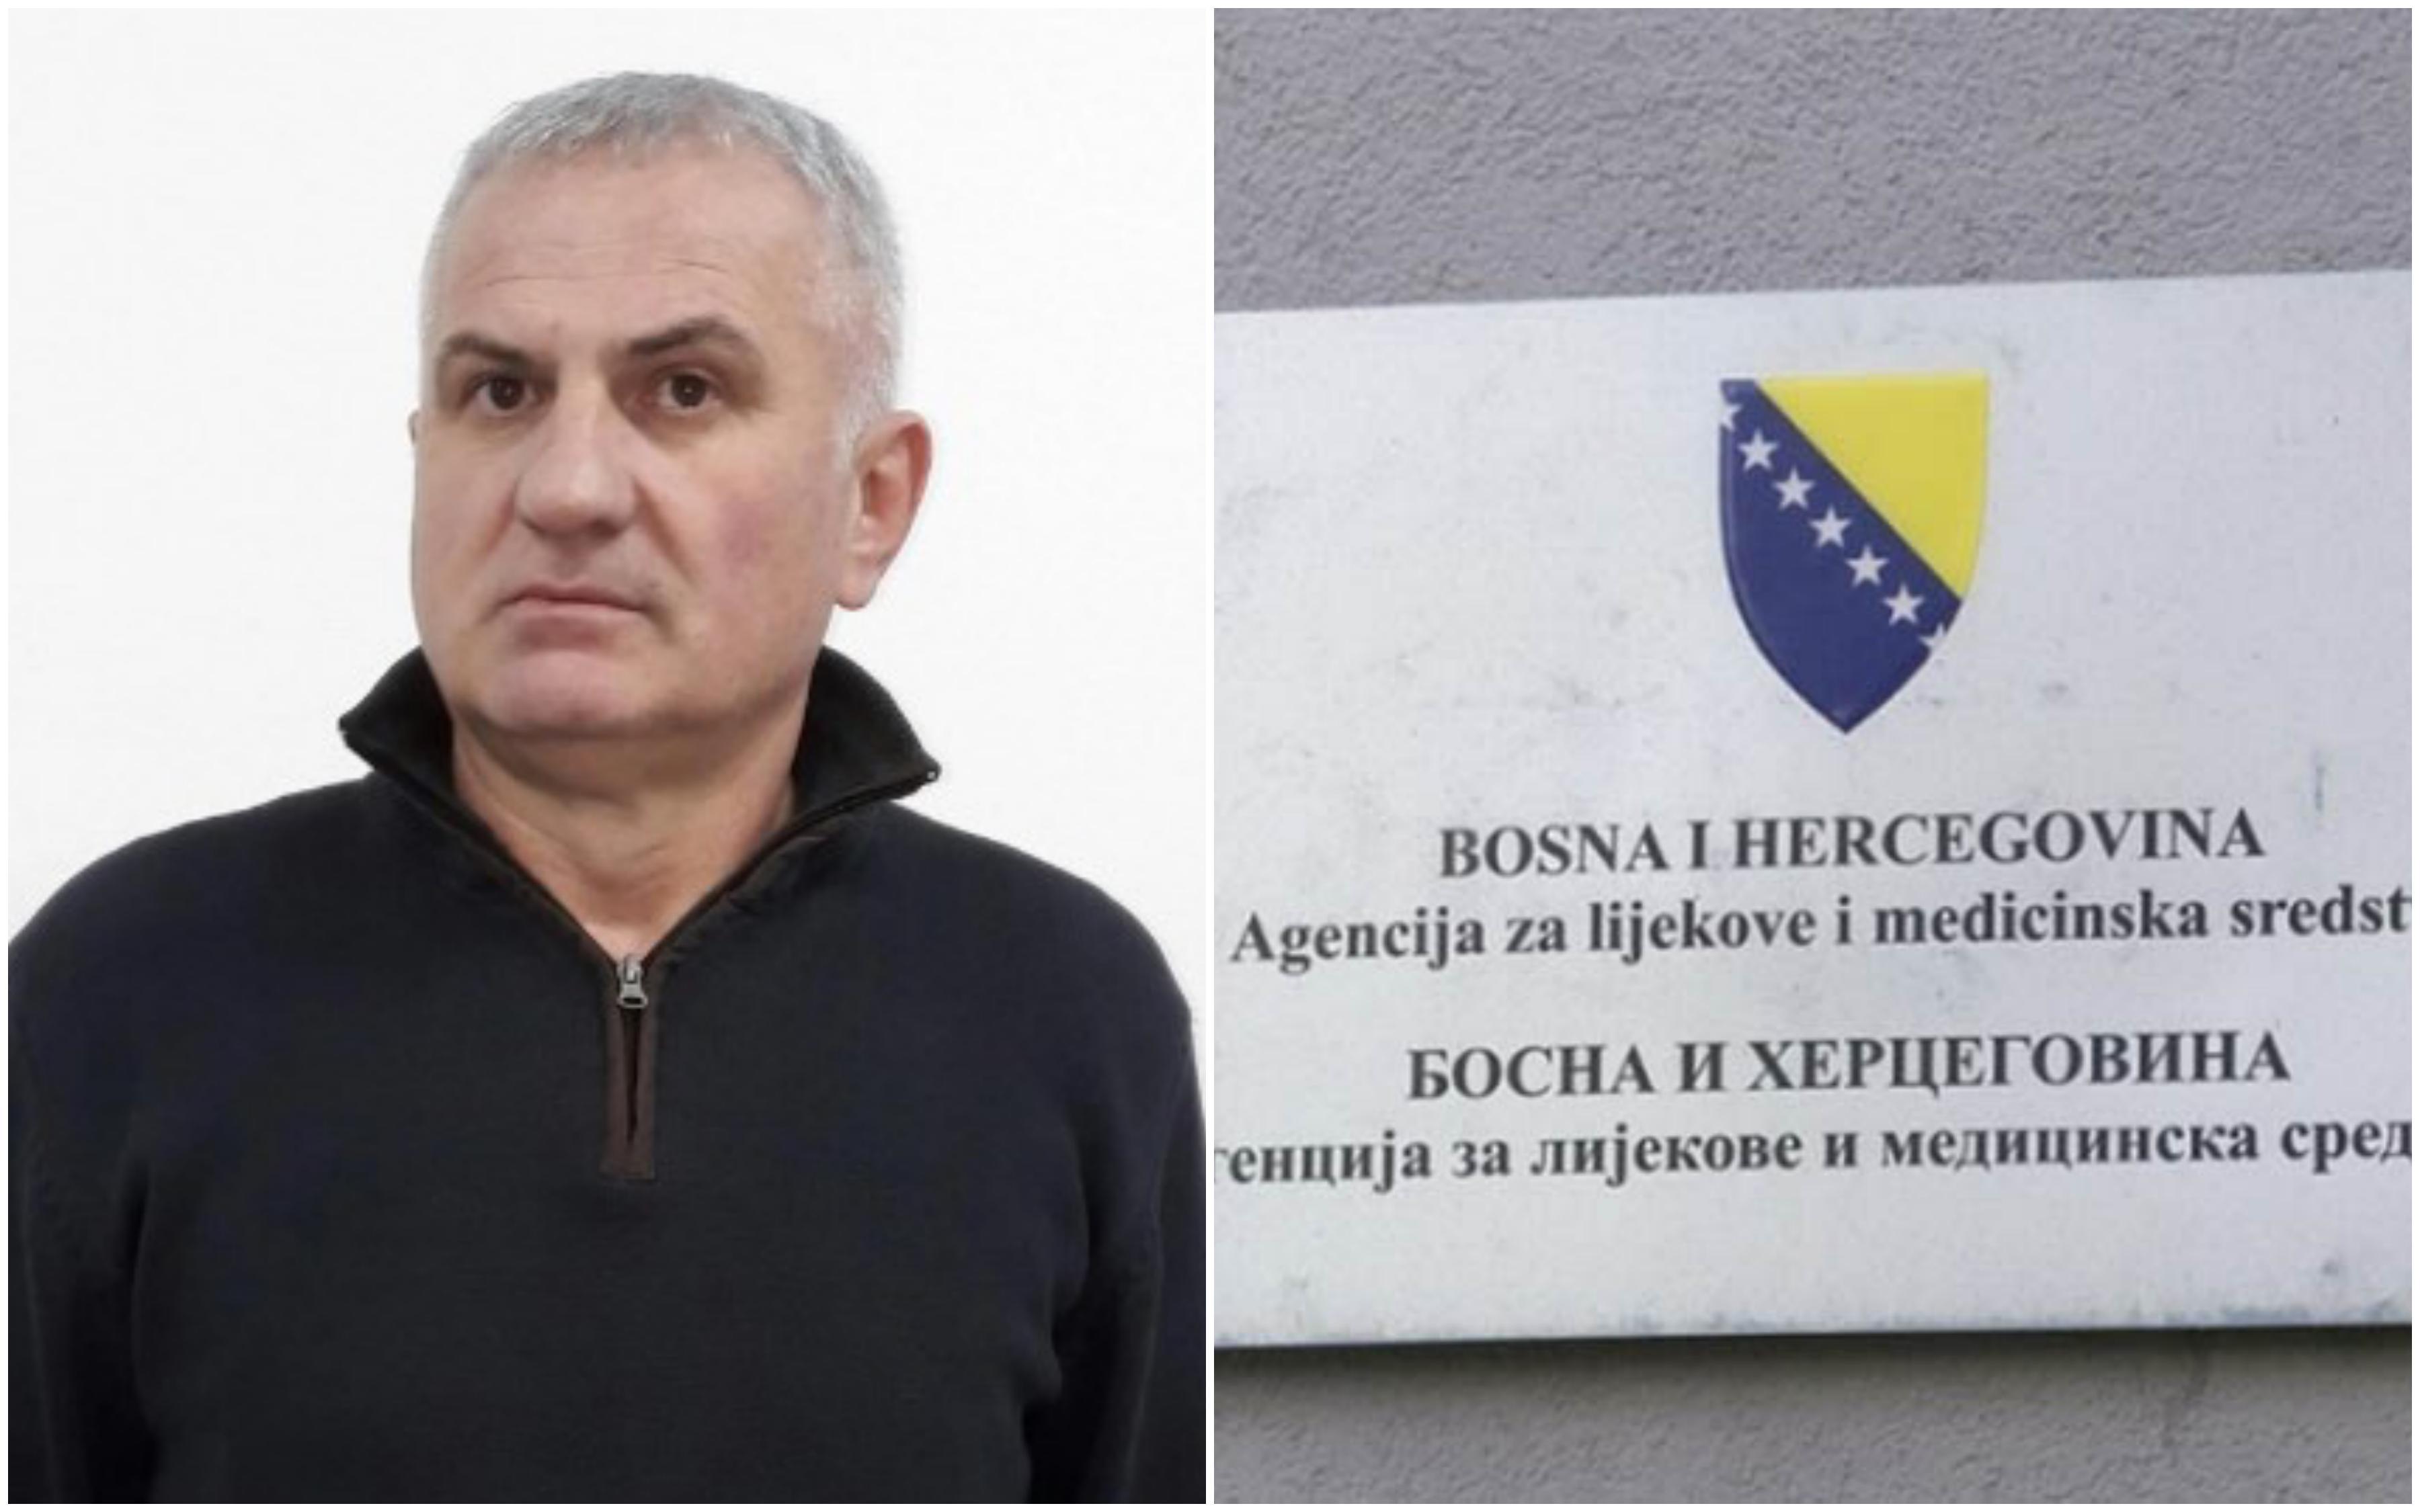 Sindikat Agencije za lijekove i medicinska sredstva BiH: Ovo nije šala politike na vlasti u RS, pripremamo štrajk